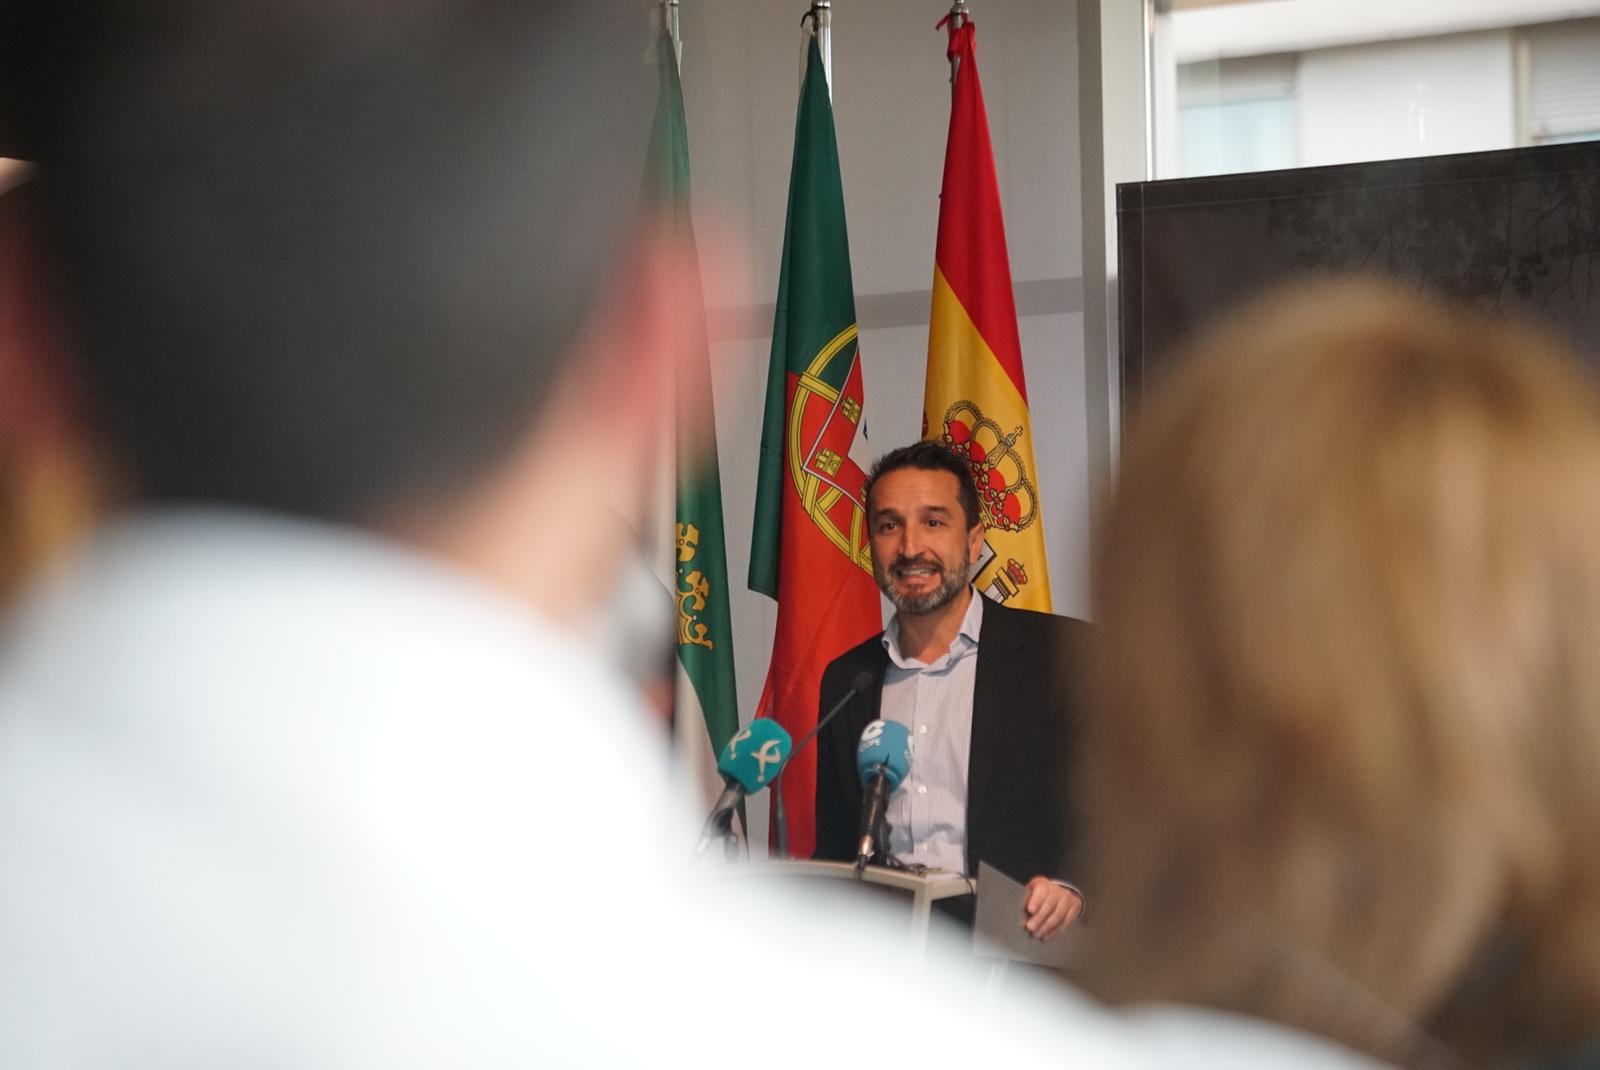 Imagen del vicepresidente de la Diputación Provincial de Badajoz durante la presentación de acto